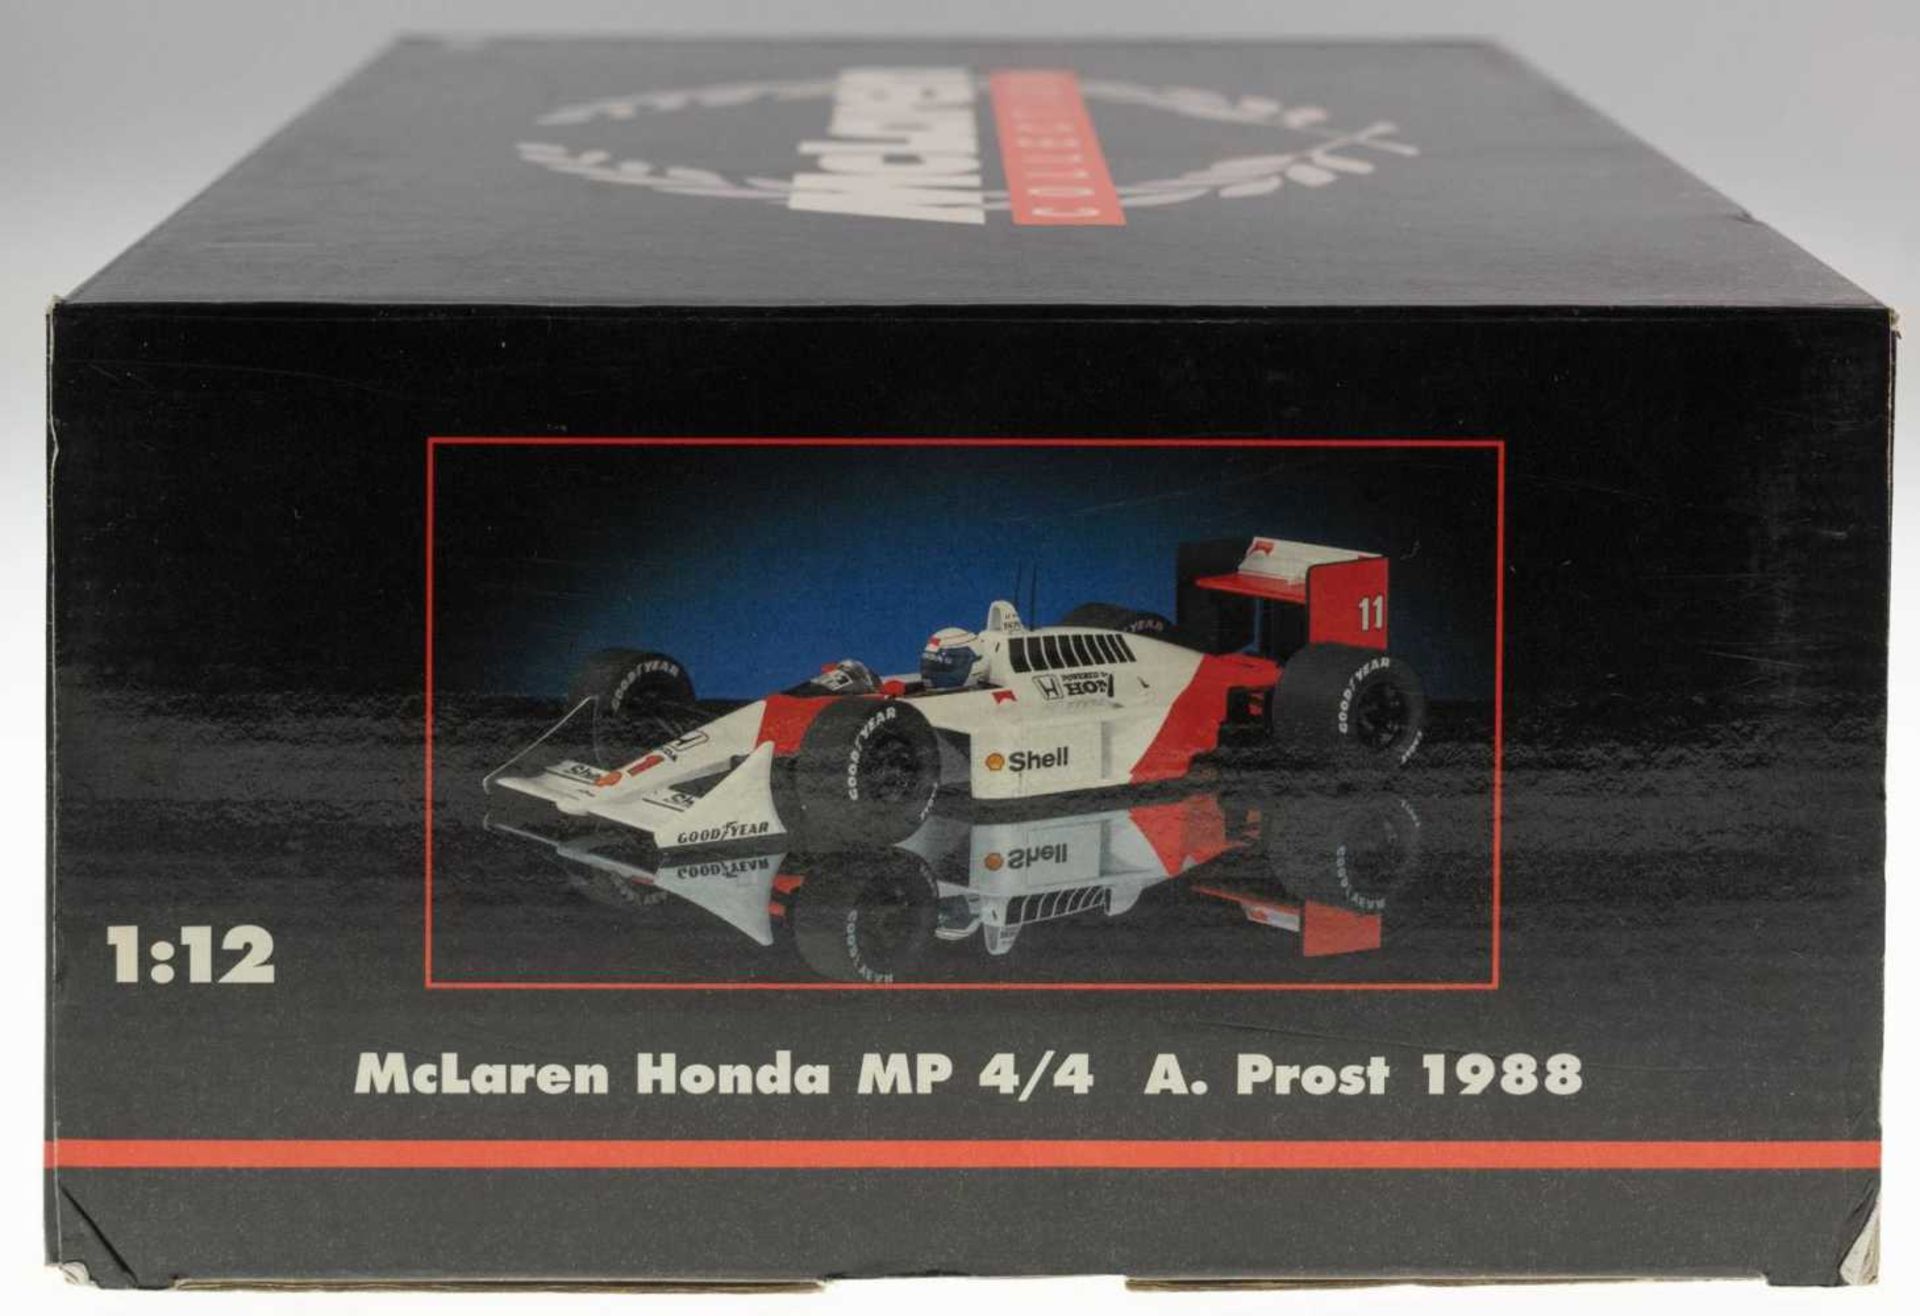 1988, maltese cross Lares Honda MP 4/4 in the measurement 1: 12, Alain skoal, original packaging - Image 3 of 3